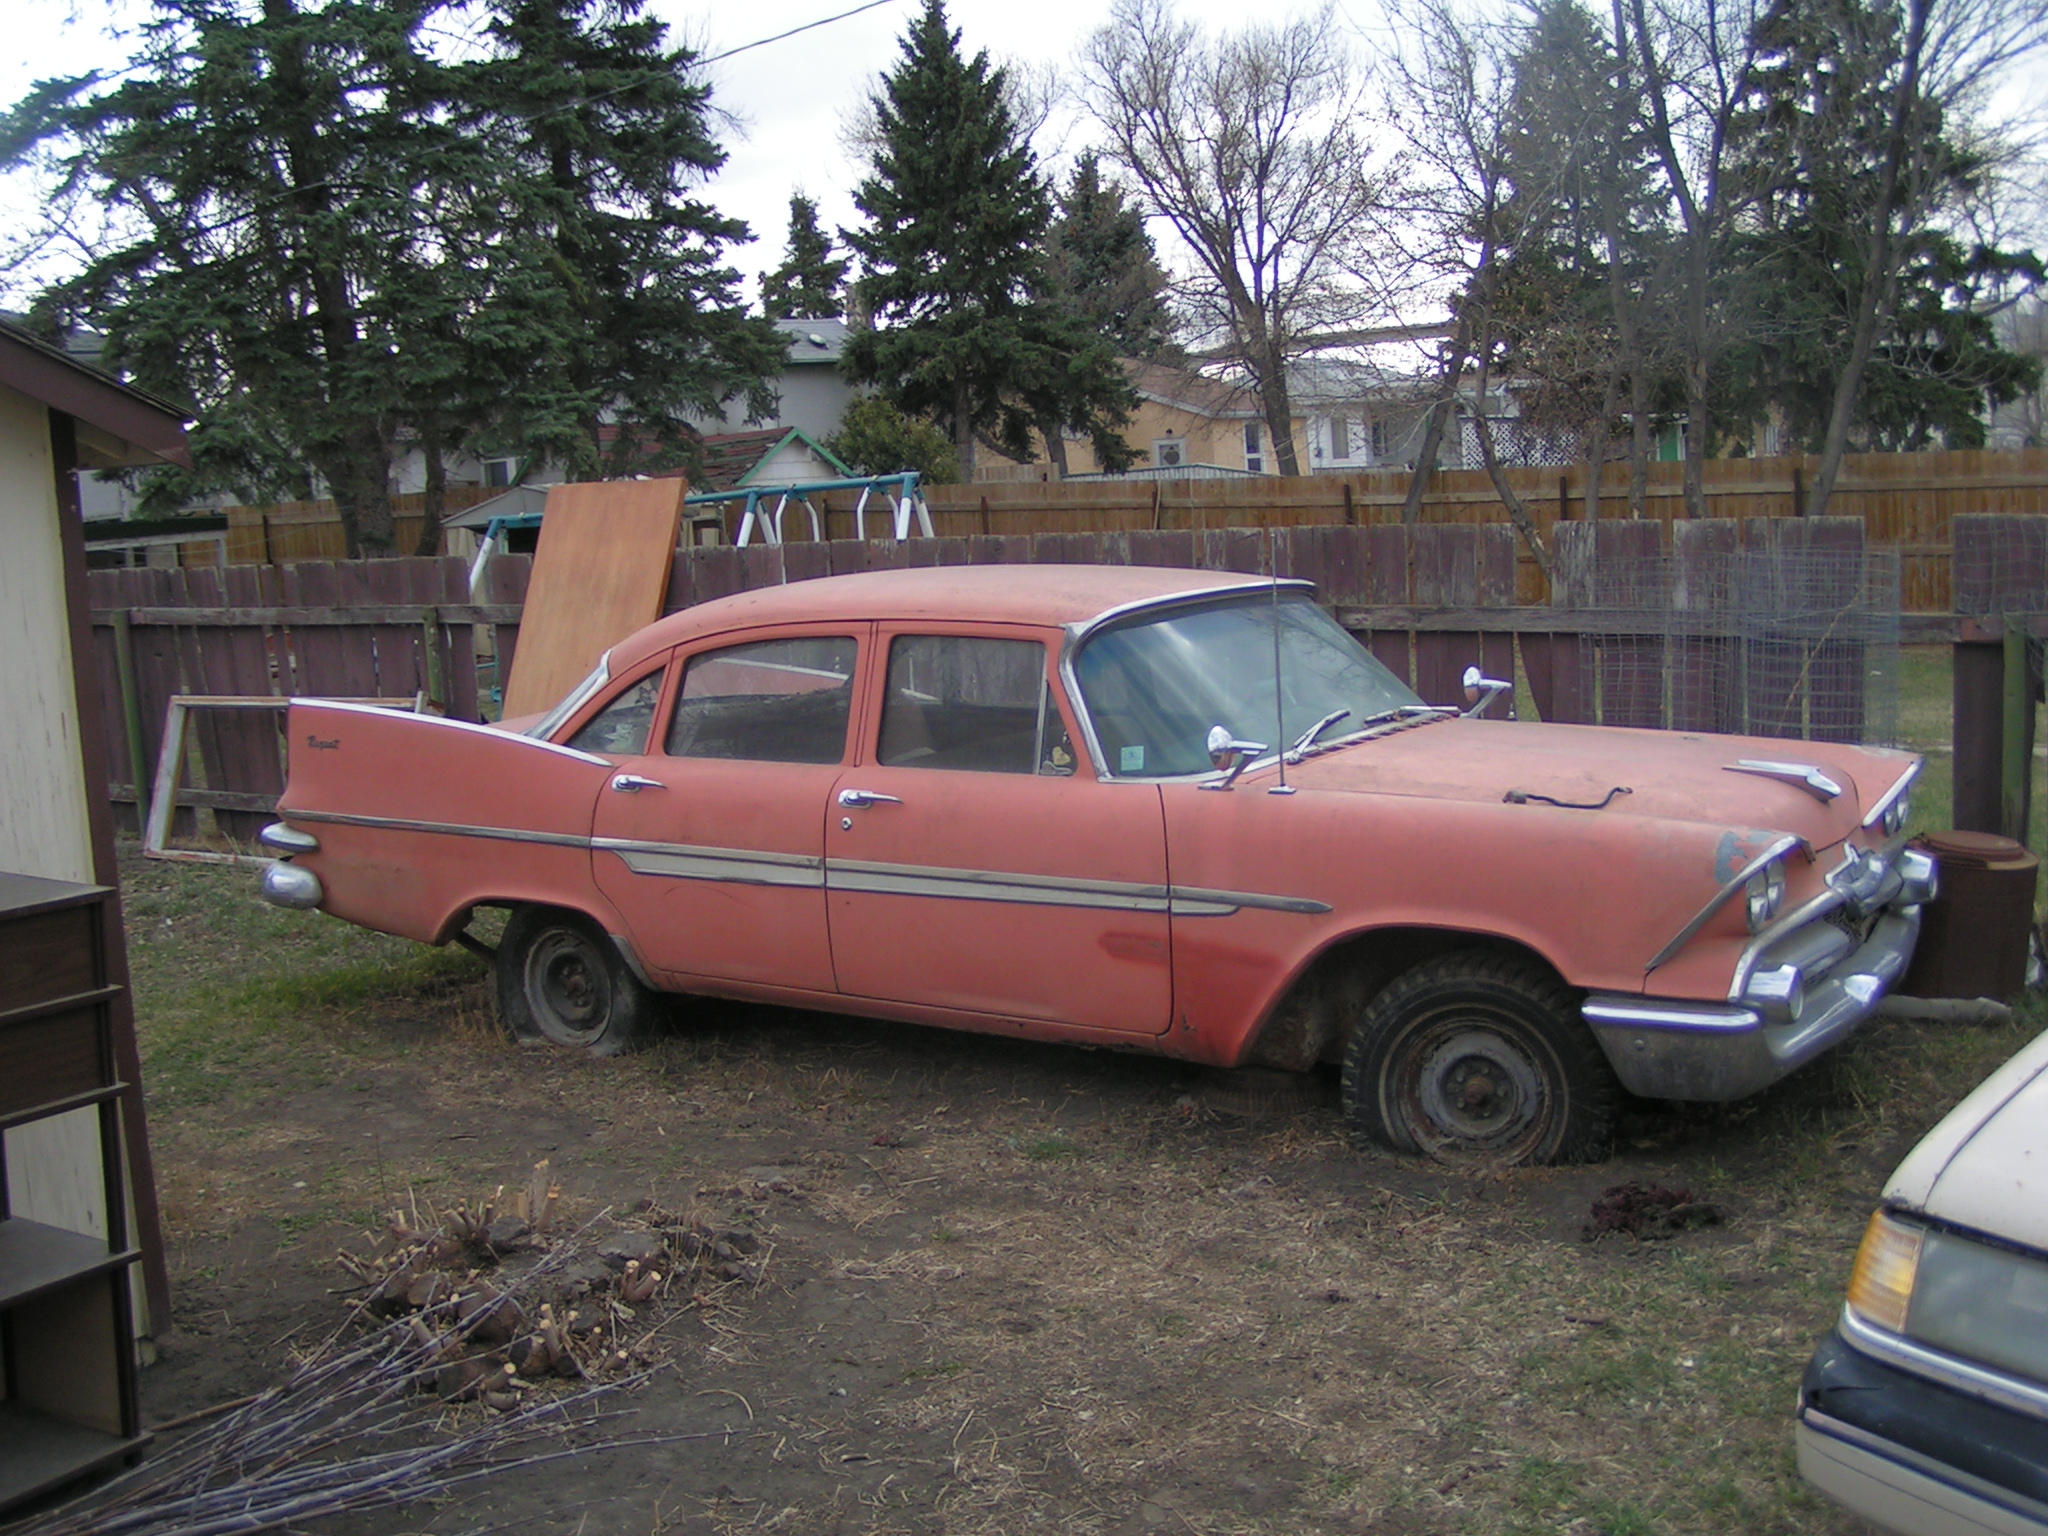 File:1959 Dodge Regent.jpg